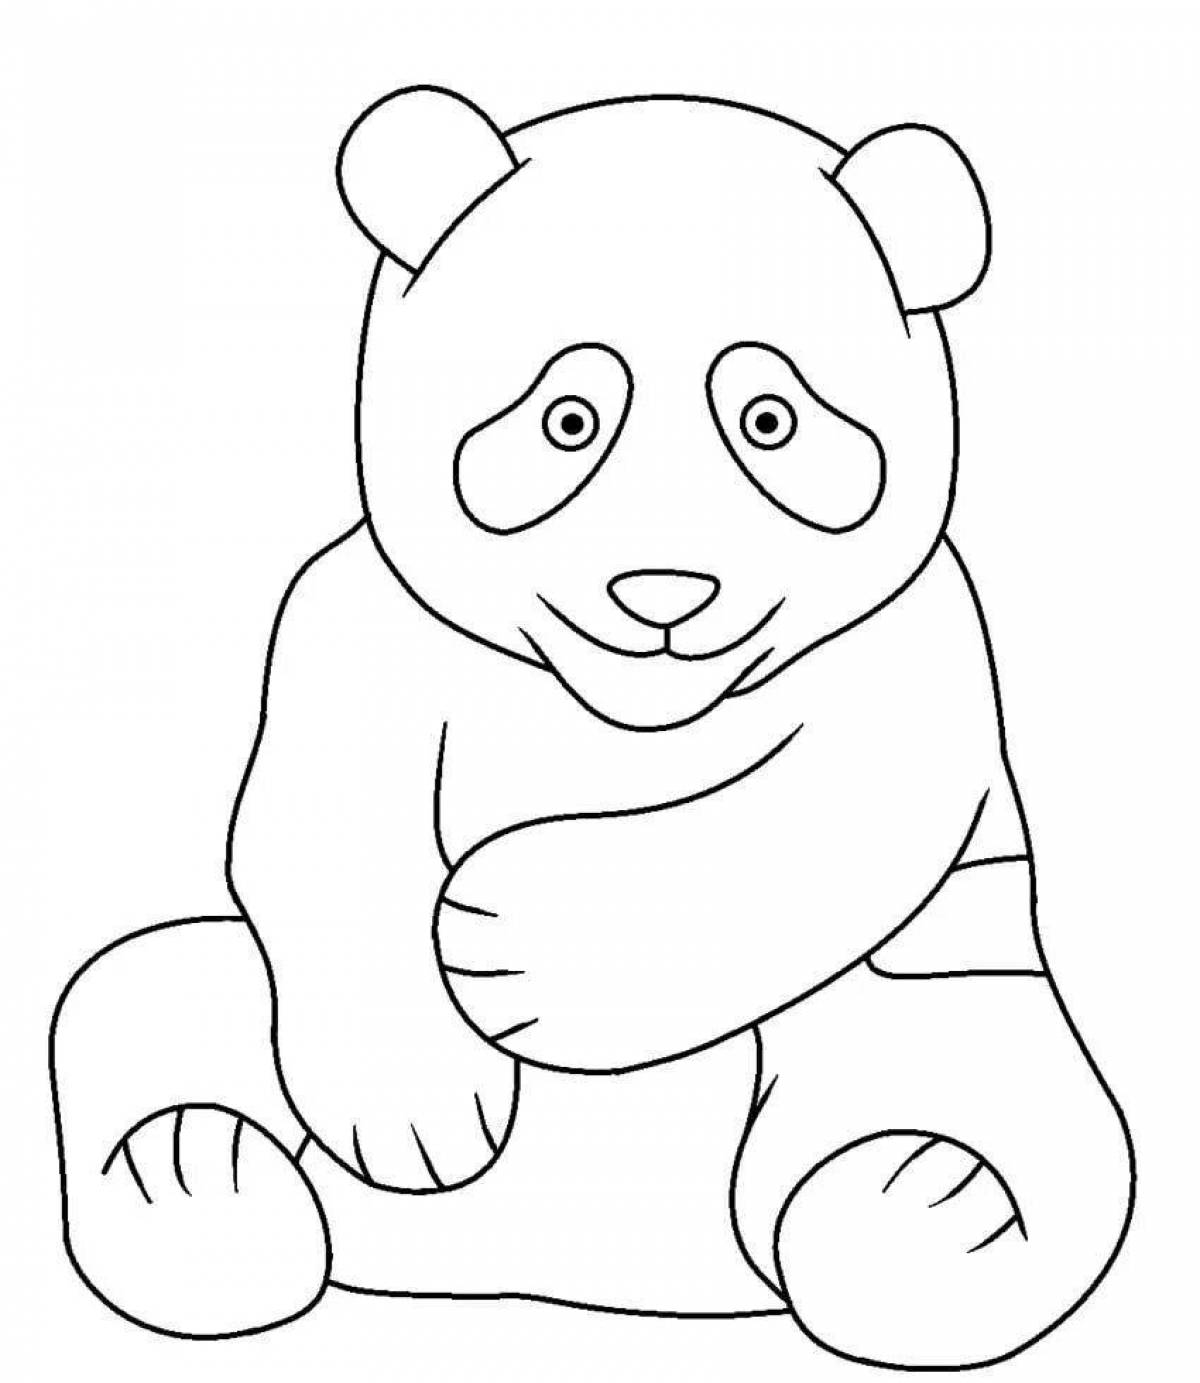 Волнующий рисунок панды для детей